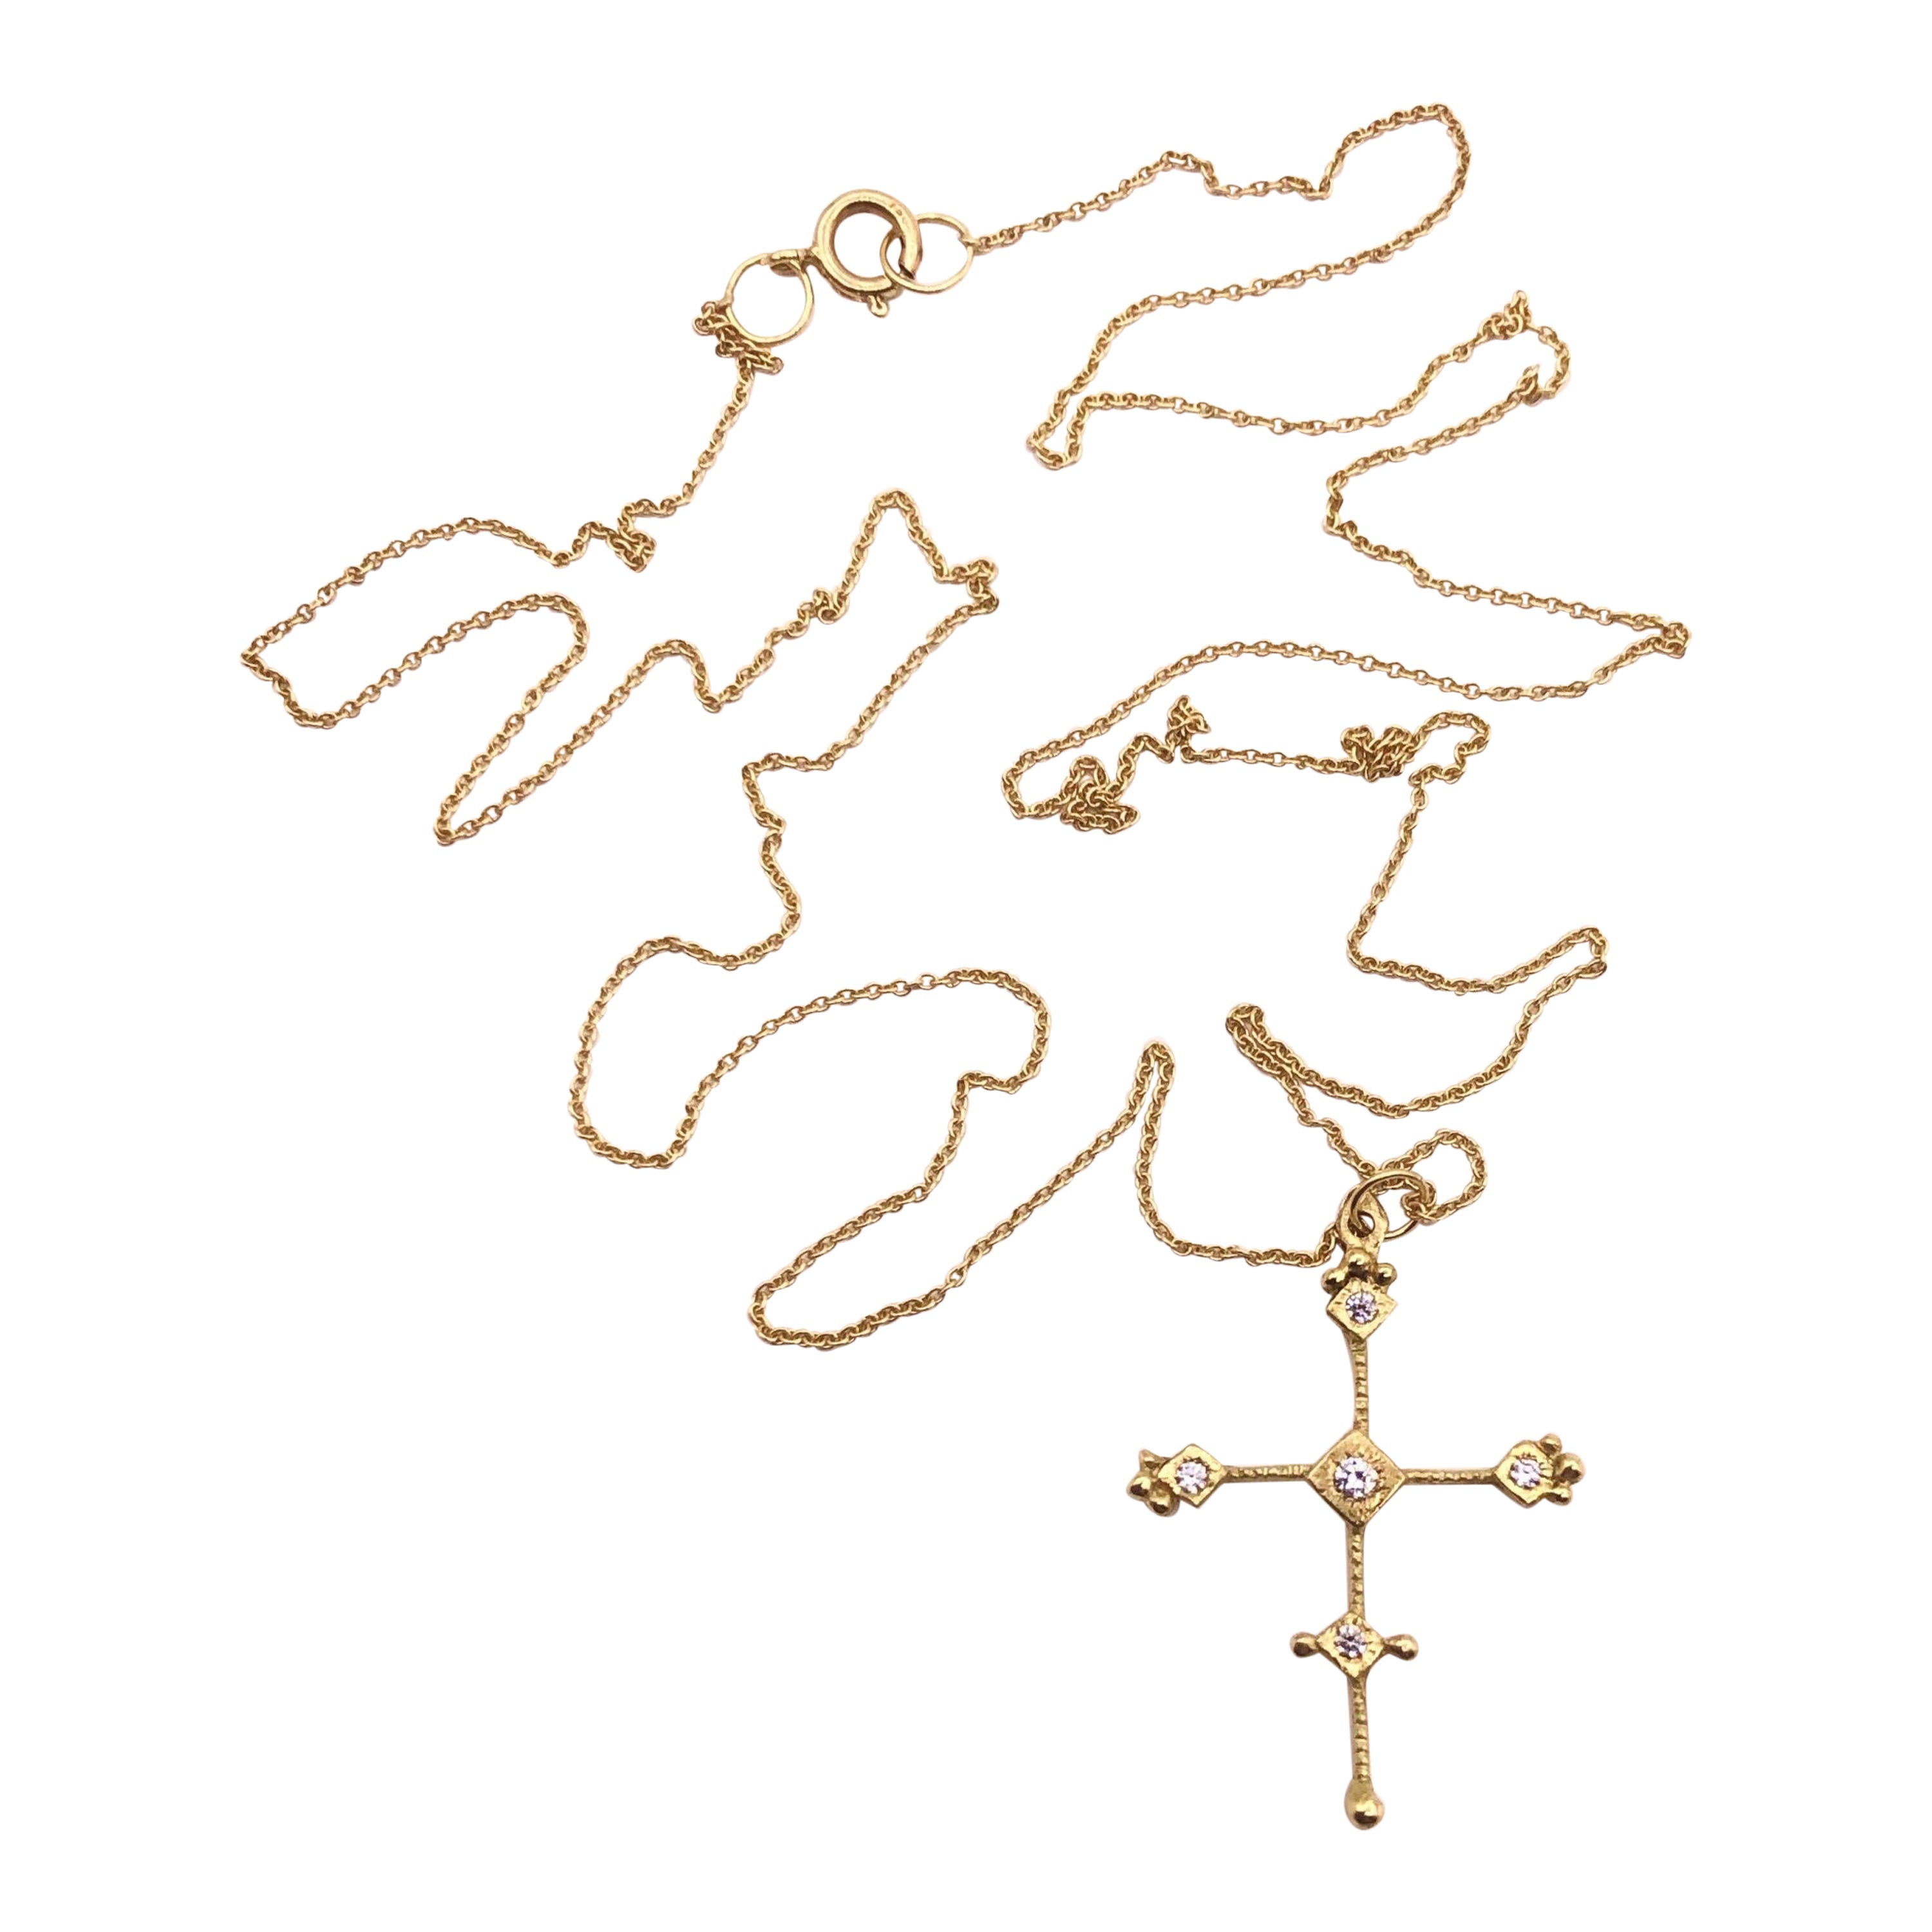 RIMA JEWELS' byzantinisches Ojo De Dios 18k Gold Kreuz Halskette Set mit Diamanten